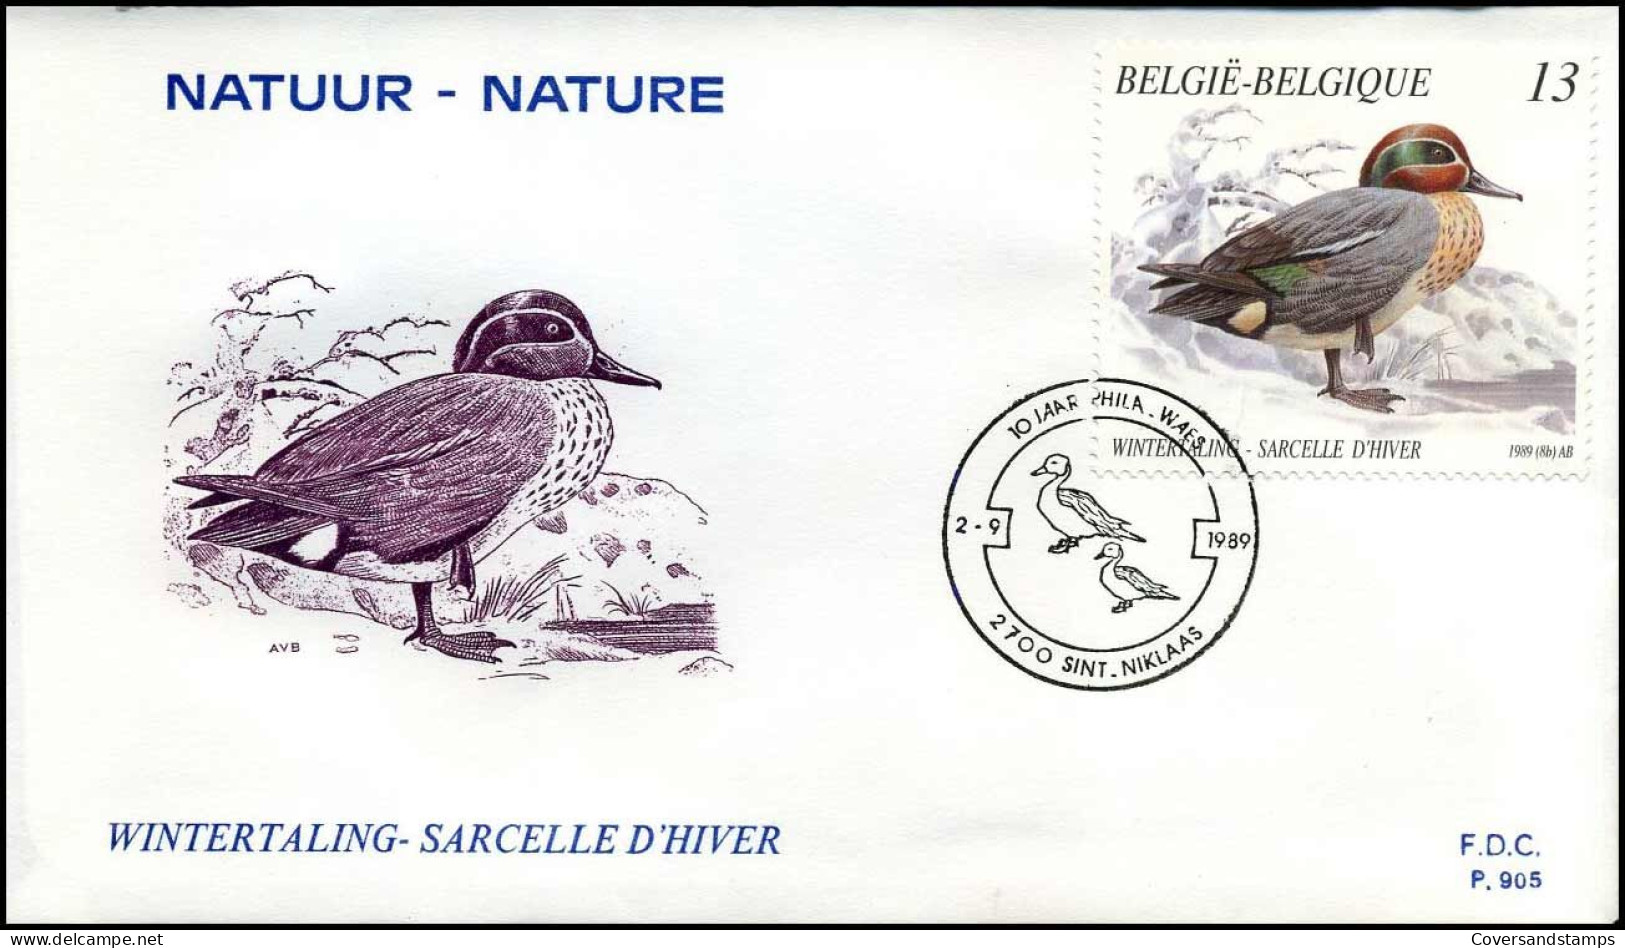 FDC 2332/35 - Natuur, Eenden - 1981-1990